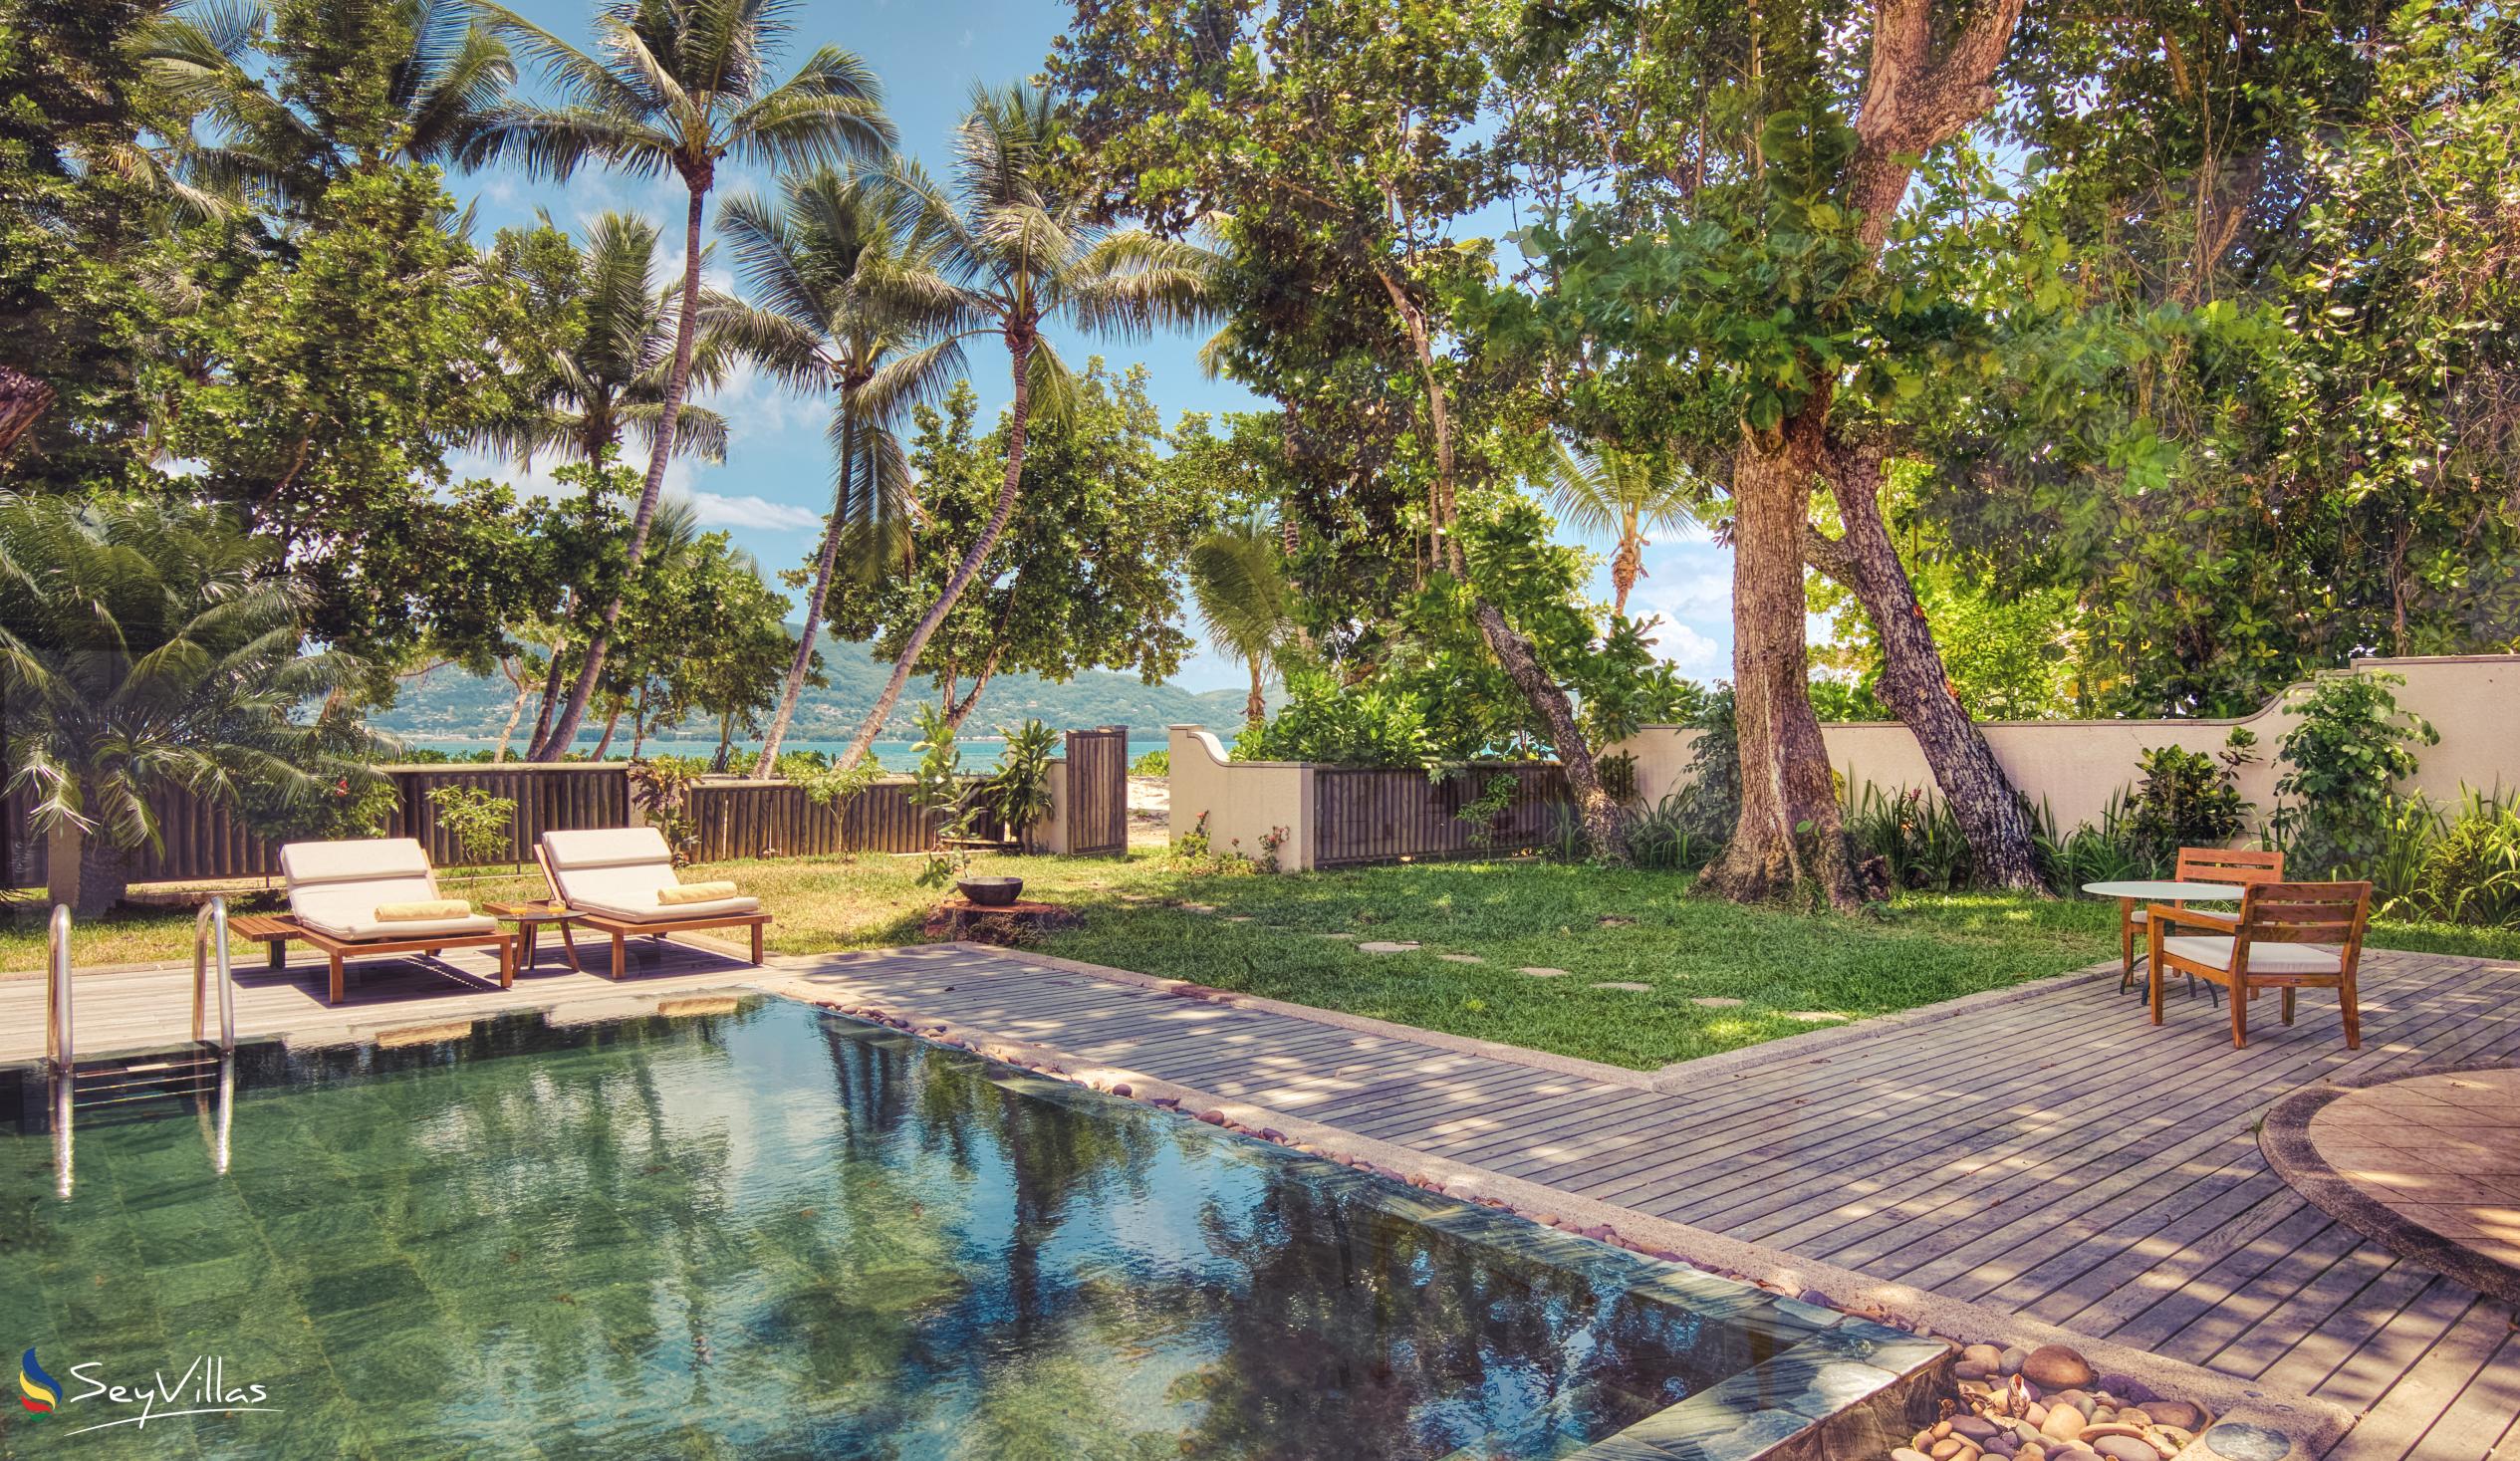 Foto 138: Club Med Seychelles - Suite mit Meerblick und privatem Pool - Saint Anne (Seychellen)